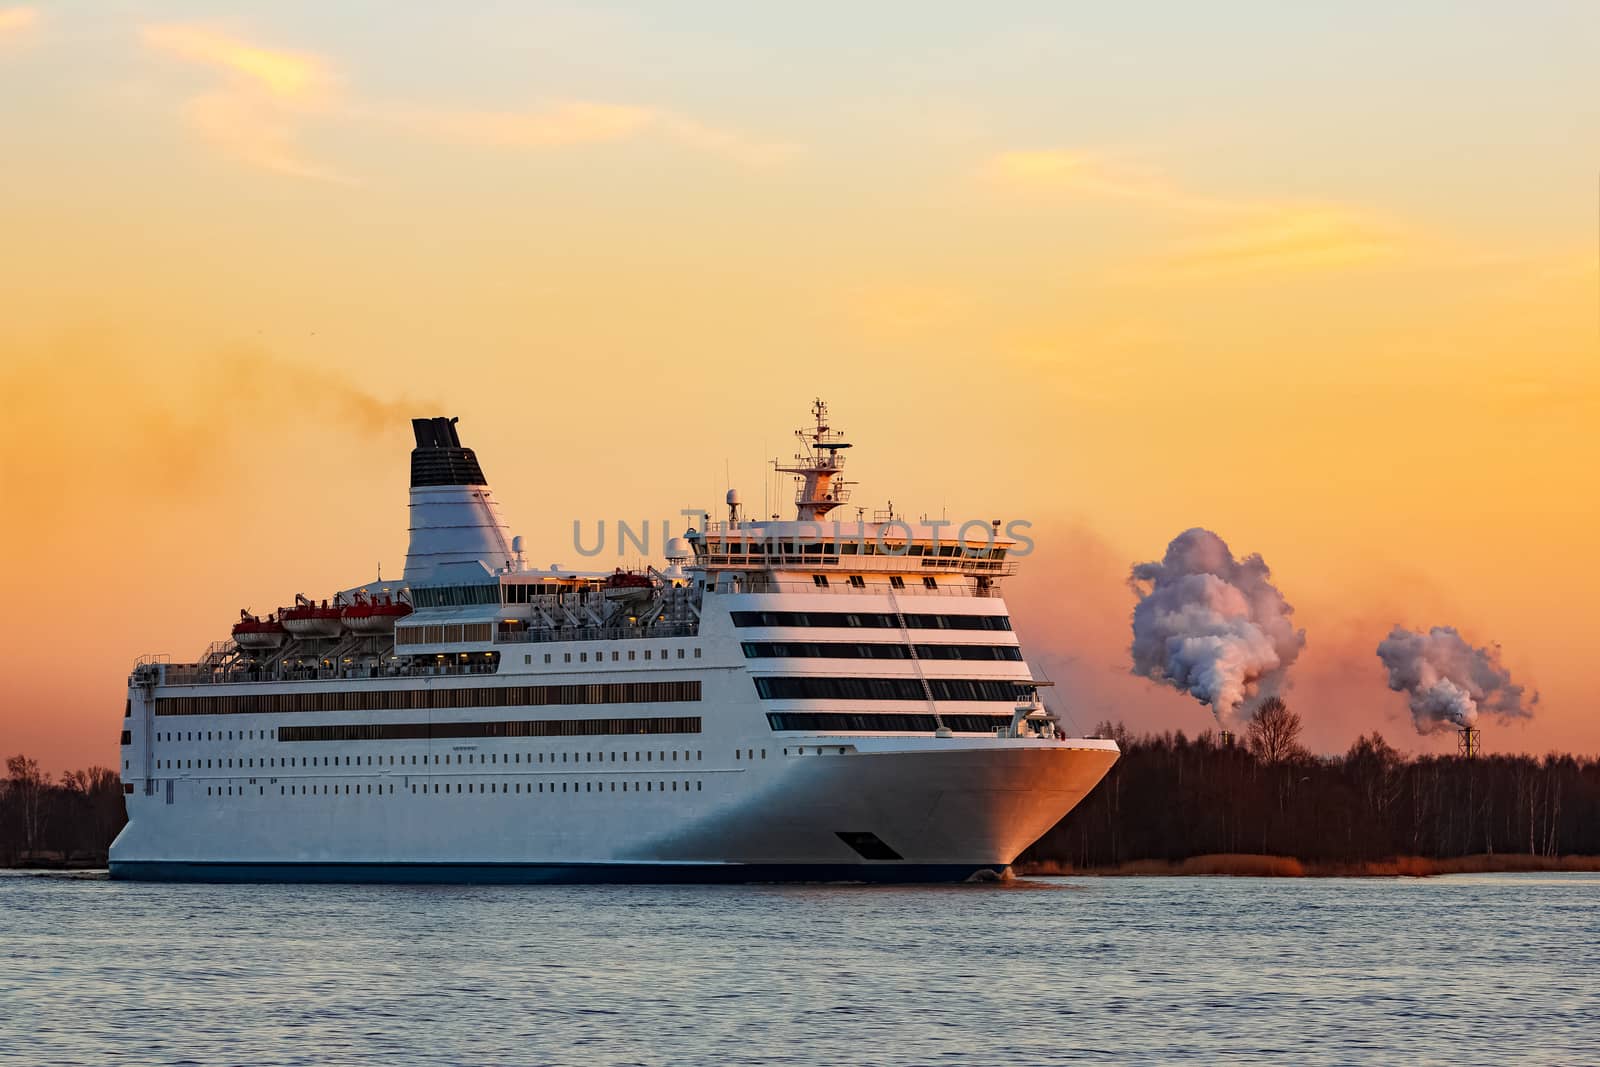 White passenger ship moving against the orange sunset sky